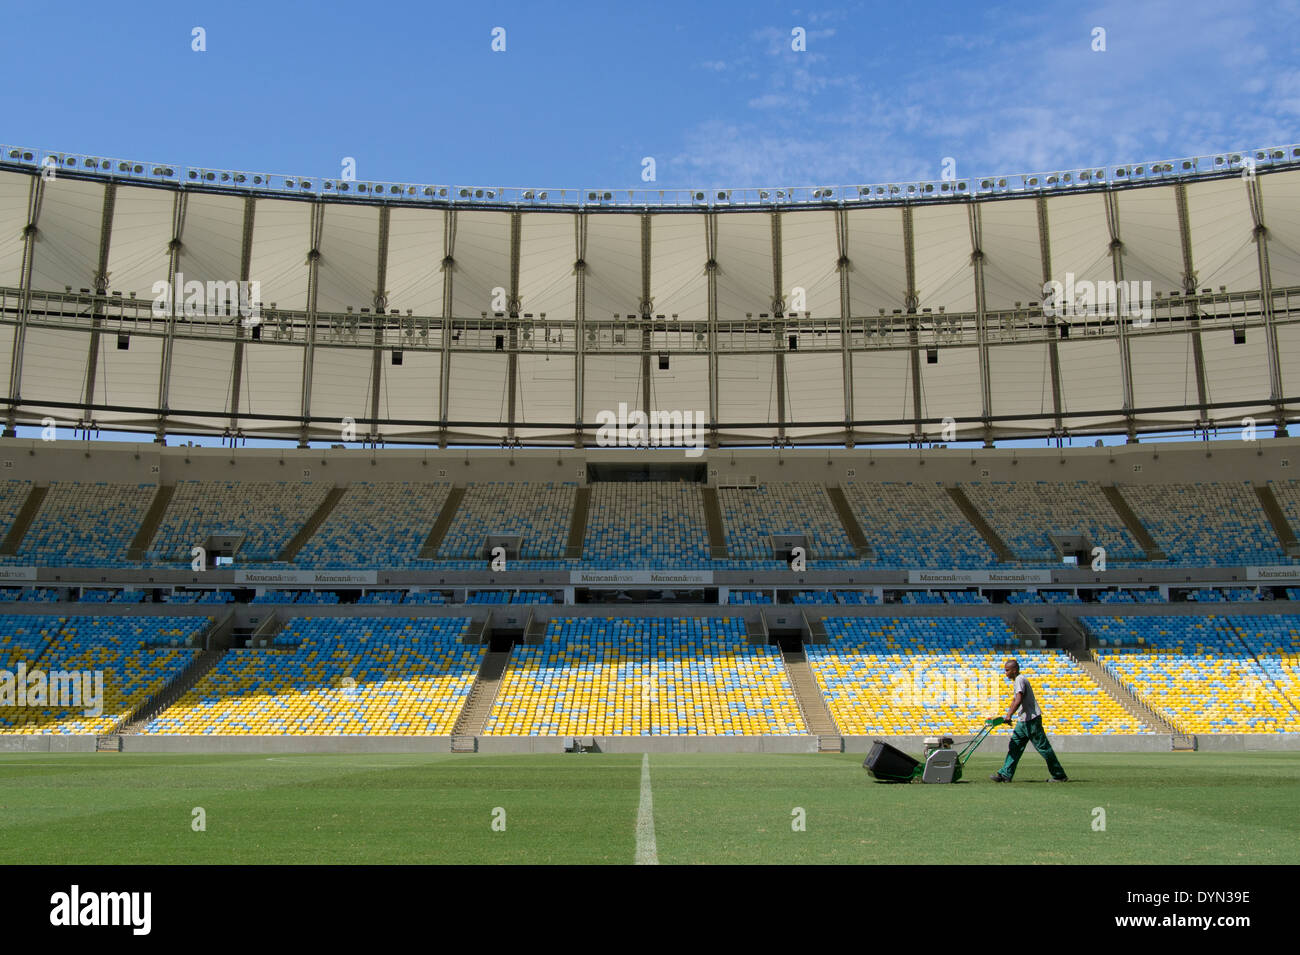 Un groundsman prepara el lanzamiento en el estadio Maracaná de Río de Janeiro, Brasil, el ensayo de fútbol de la Final de la Copa Mundial de la FIFA 2014. Foto de stock